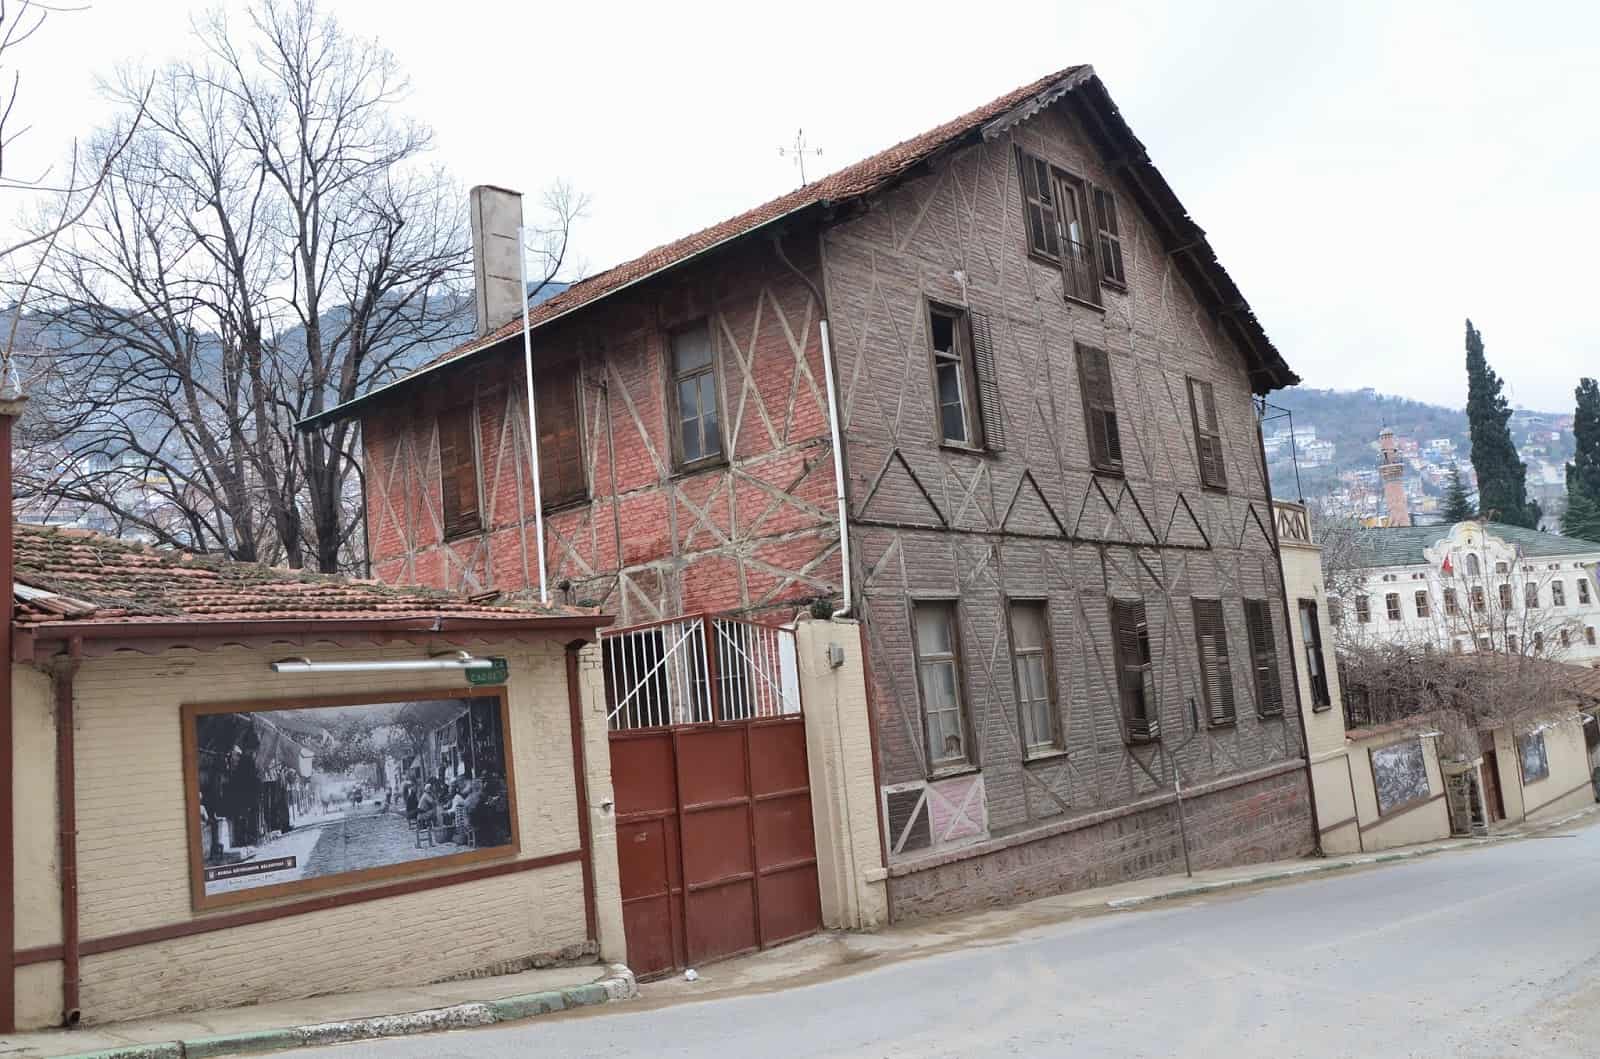 Old tobacco factory in Bursa, Turkey